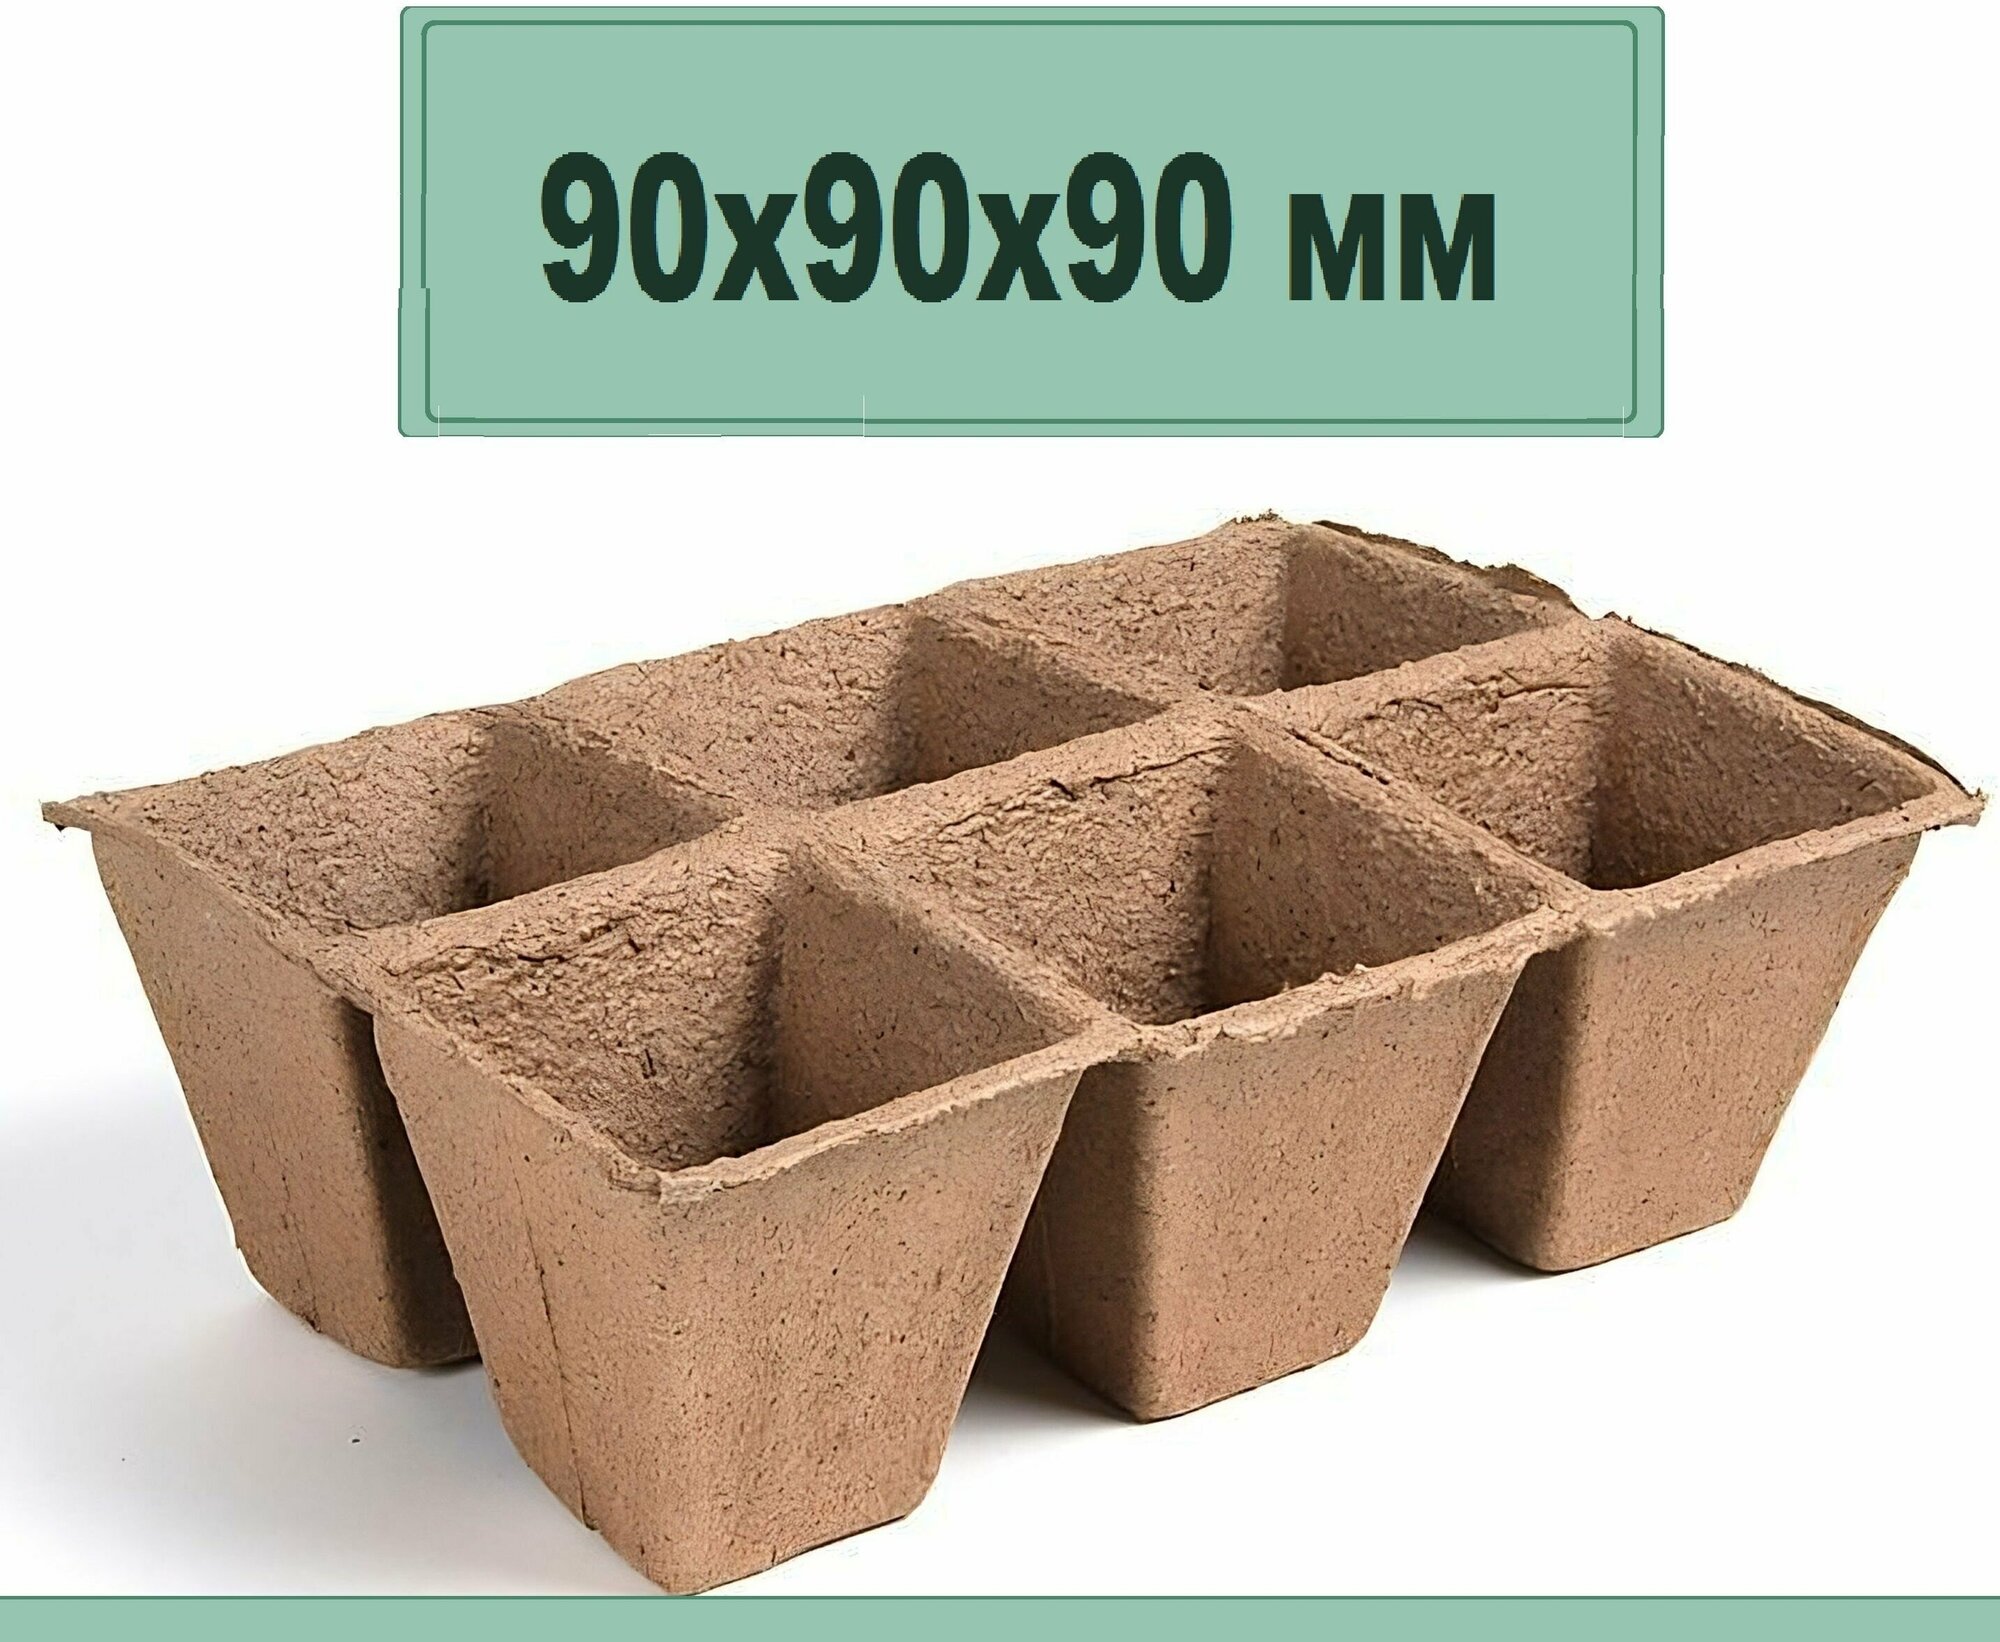 Блок торфяных горшков 5 кассет по 6 ячеек 90х90х90 мм. Емкости удобны и практичны растворяясь постепенно превращаются в удобрение для рассады